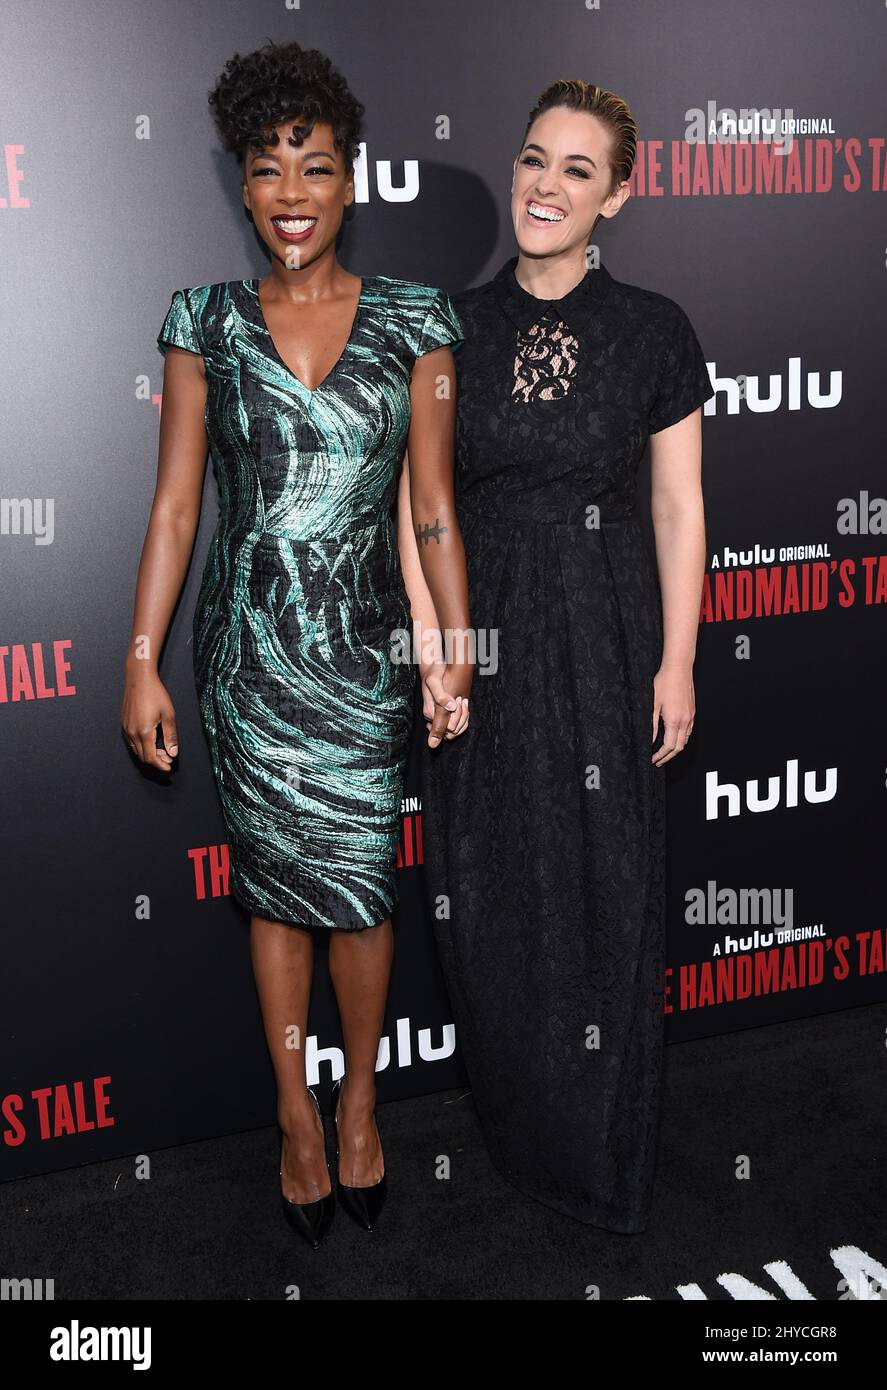 Samira Wiley et Lauren Morelli arrivent pour la première « The Handmaid's Tale » de Hulu, qui s'est tenue au Cinerama Dome Hollywood, Los Angeles, le 25 avril 2017 Banque D'Images